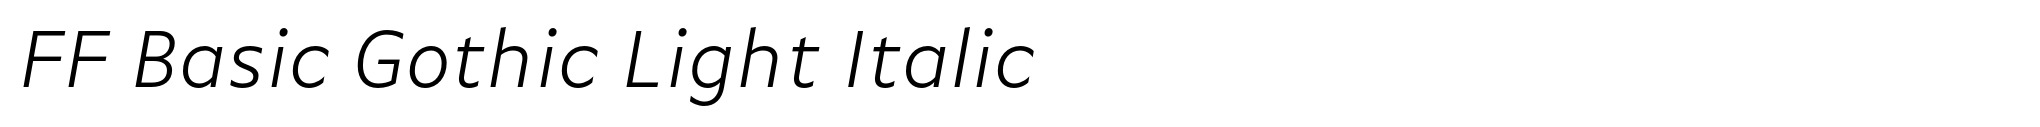 FF Basic Gothic Light Italic image